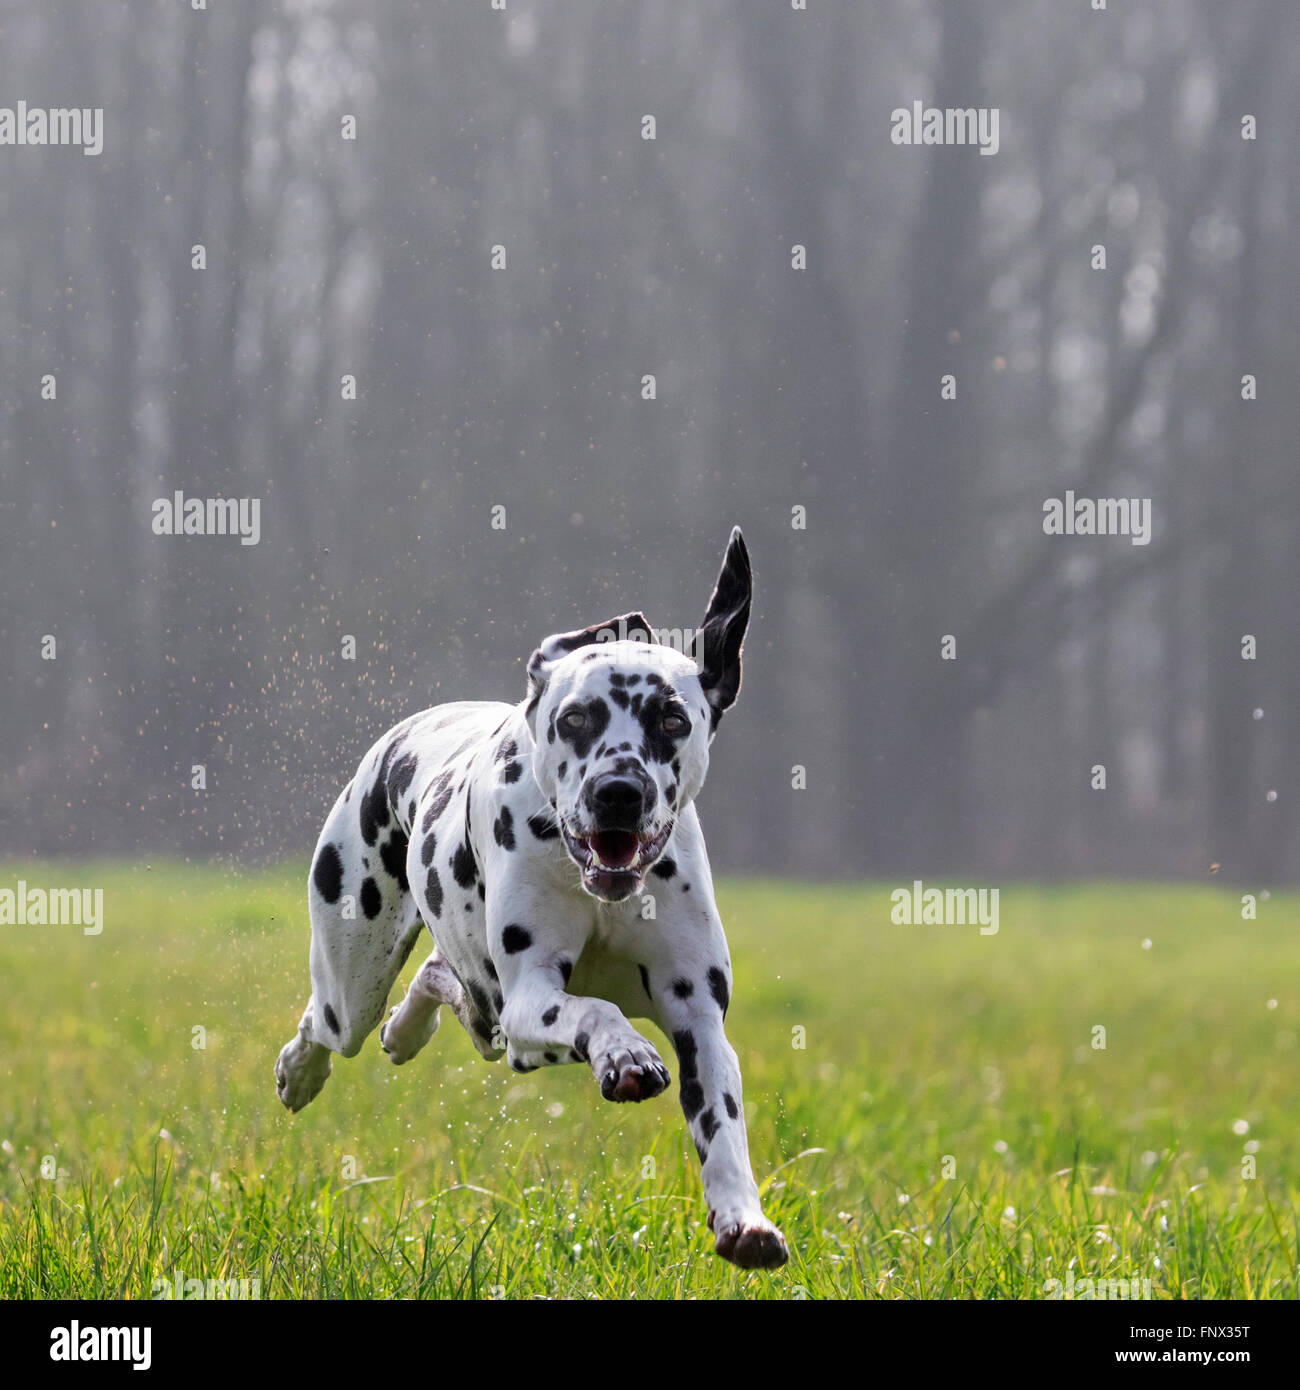 Chien dalmatien / transport / spotted coach chien qui court dans l'herbe mouillée dans la zone Banque D'Images